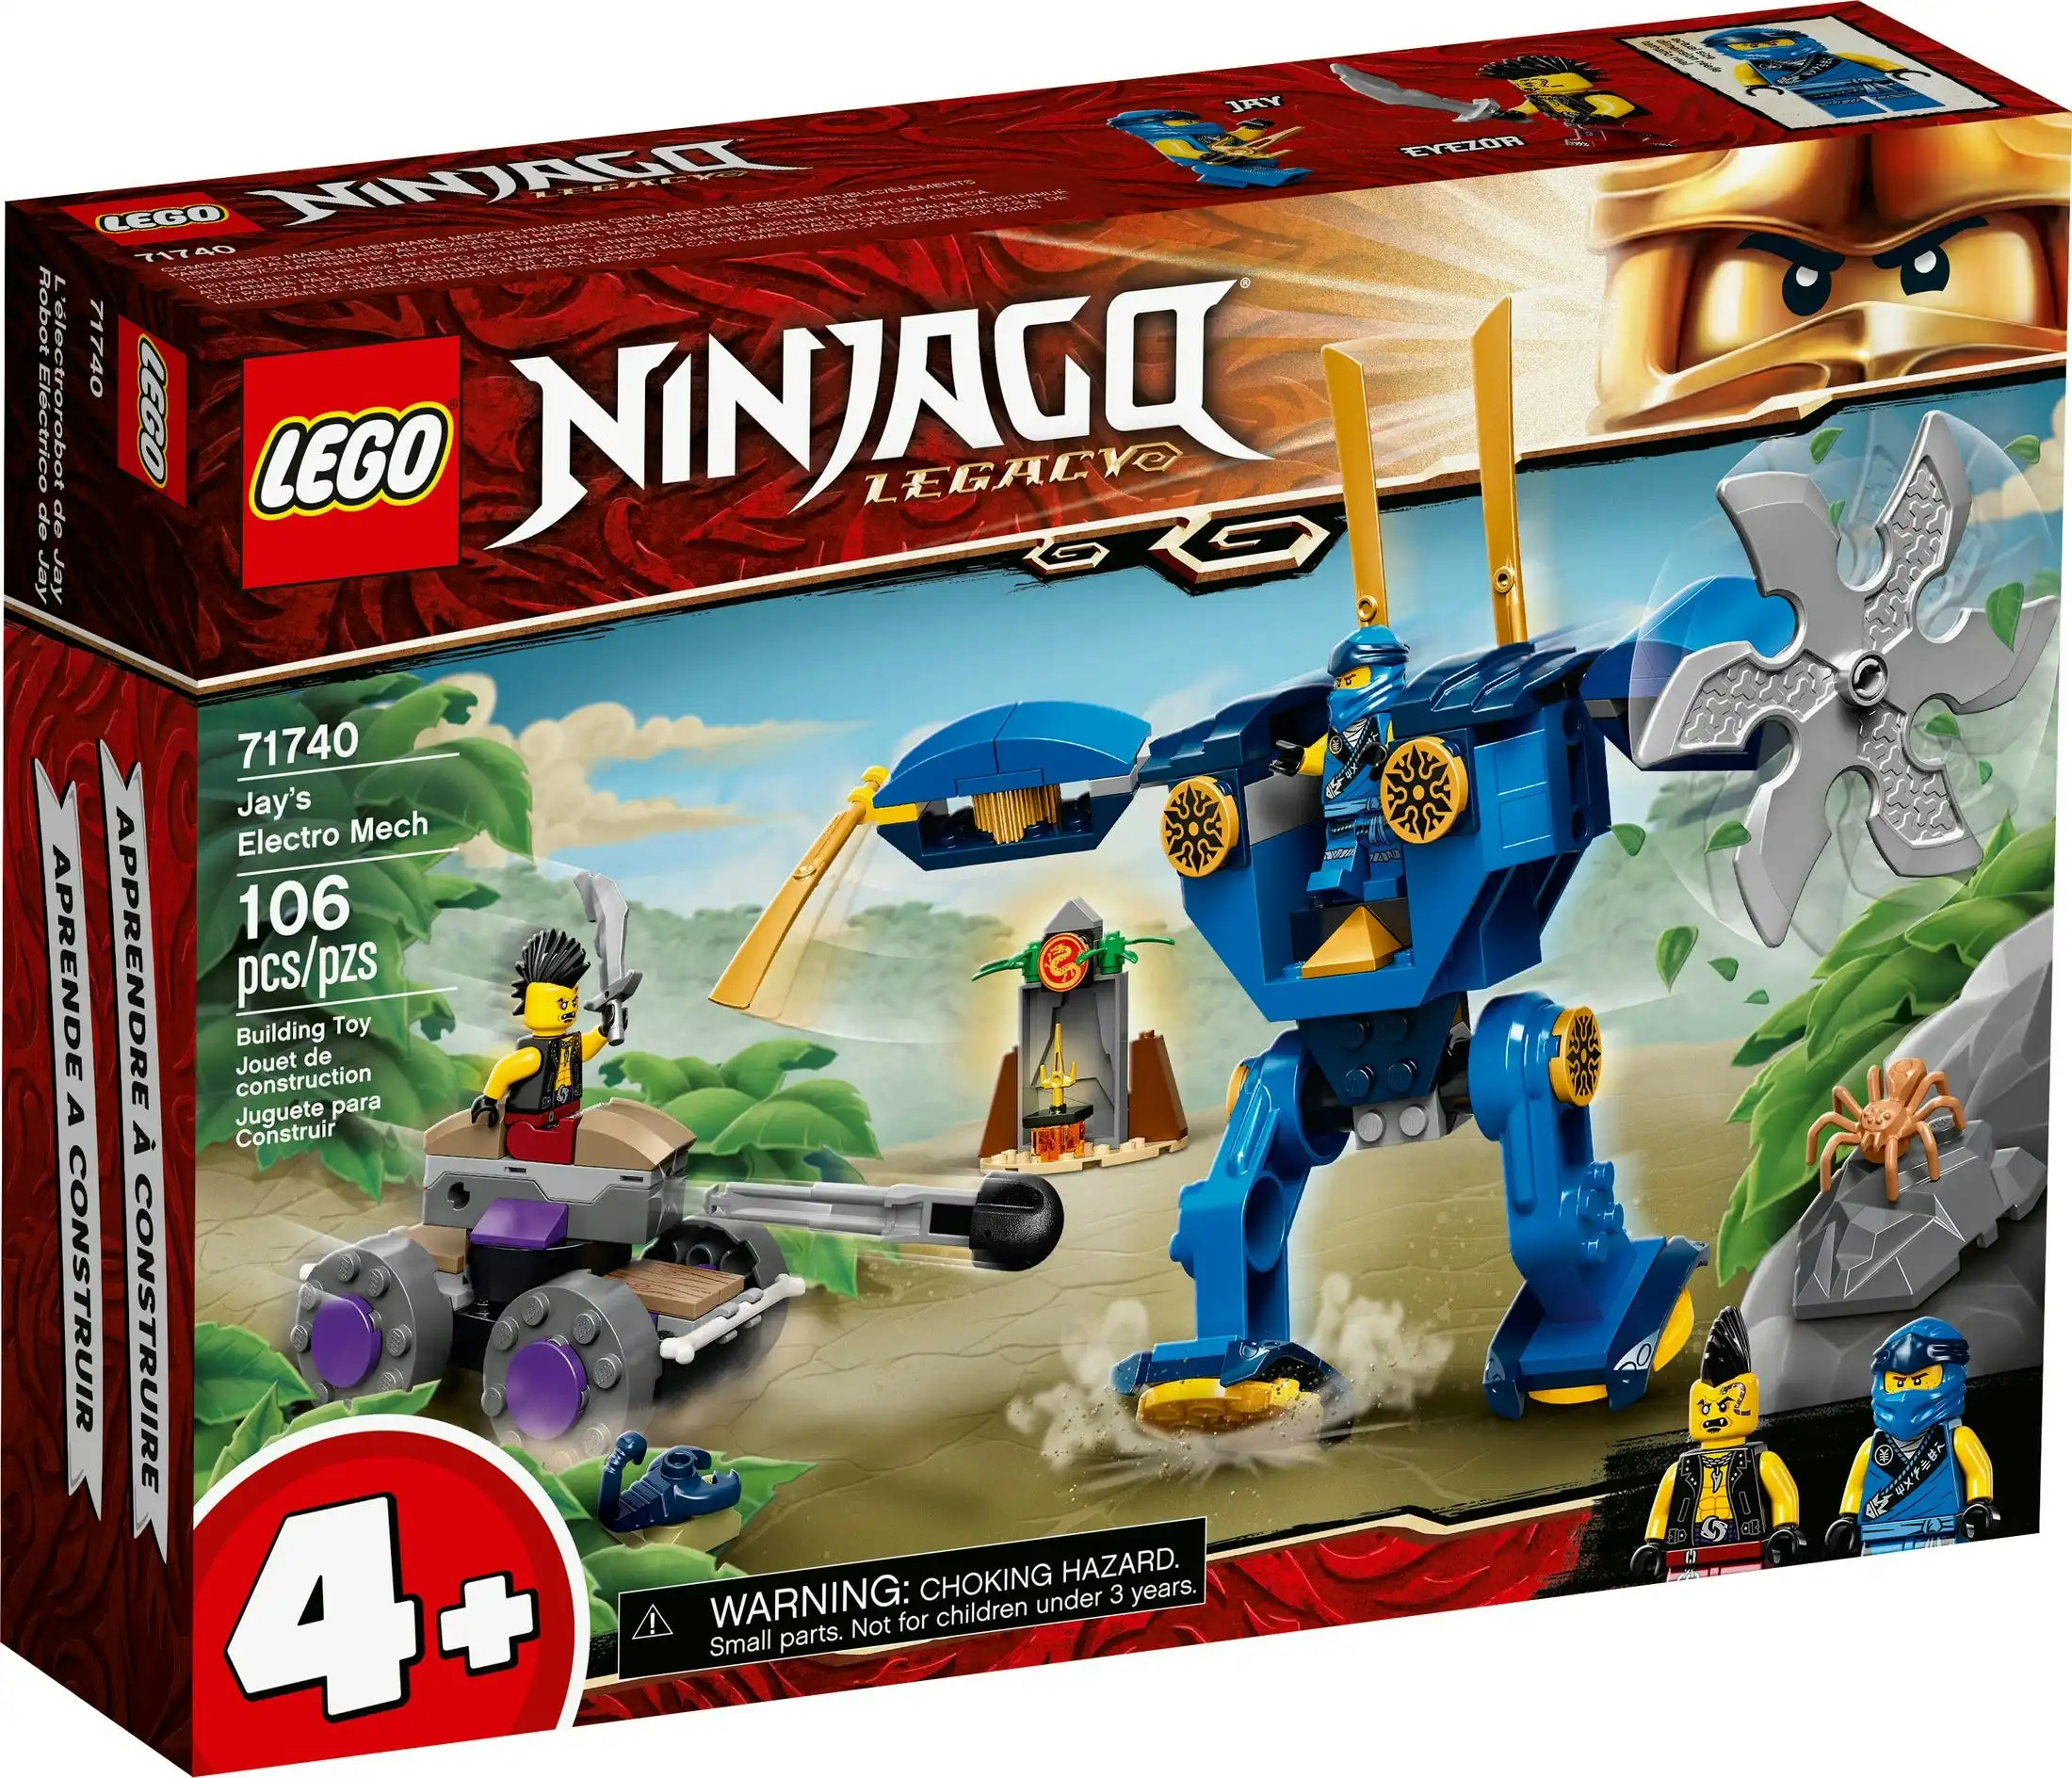 LEGO 71740 Jay' s Electro Mech - NINJAGO  4+